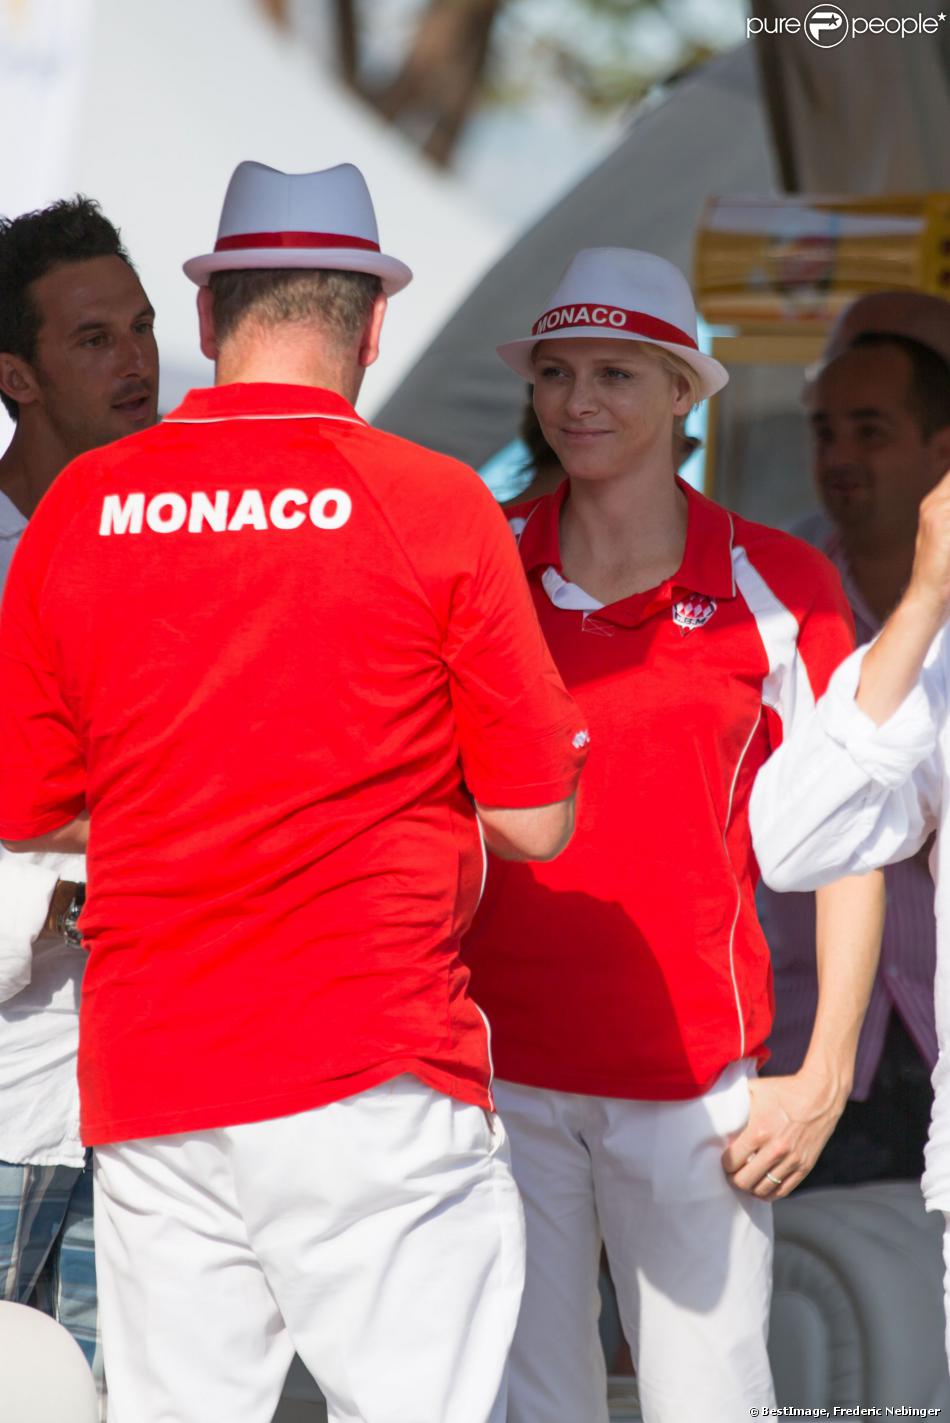  Le prince Albert II de Monaco et la princesse Charlene, associés à Dylan Rocher et Daniel Elena, ont remporté le 5 septembre 2013 le tournoi Peace and sport pro/am organisé à la veille de la finale des Masters de Pétanque de Monaco 2013 sur la place du palais princier. 